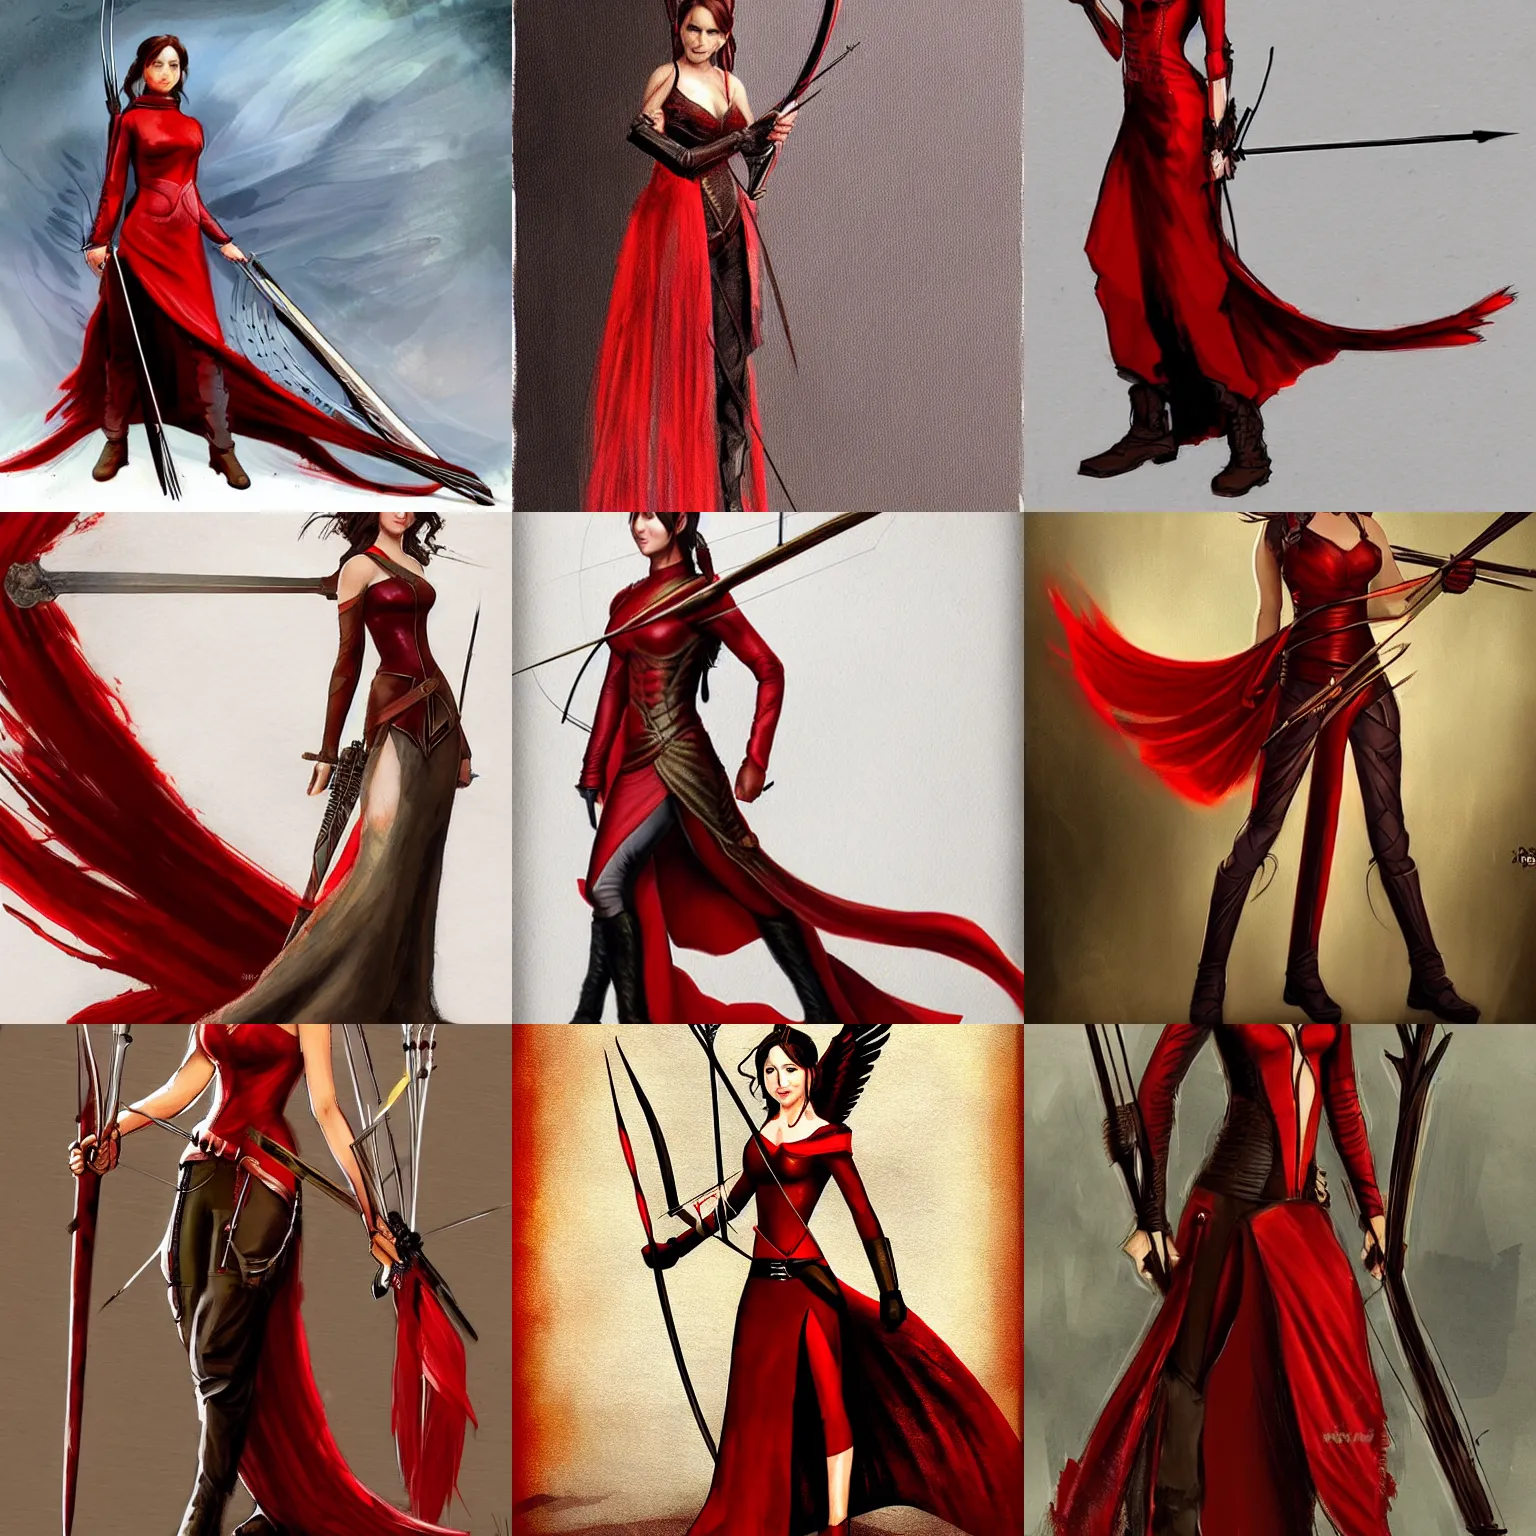 Prompt: katniss everdeen in a red dress holding two swords, concept art by david roberts, deviantart contest winner, fantasy art, official art, steampunk, concept art